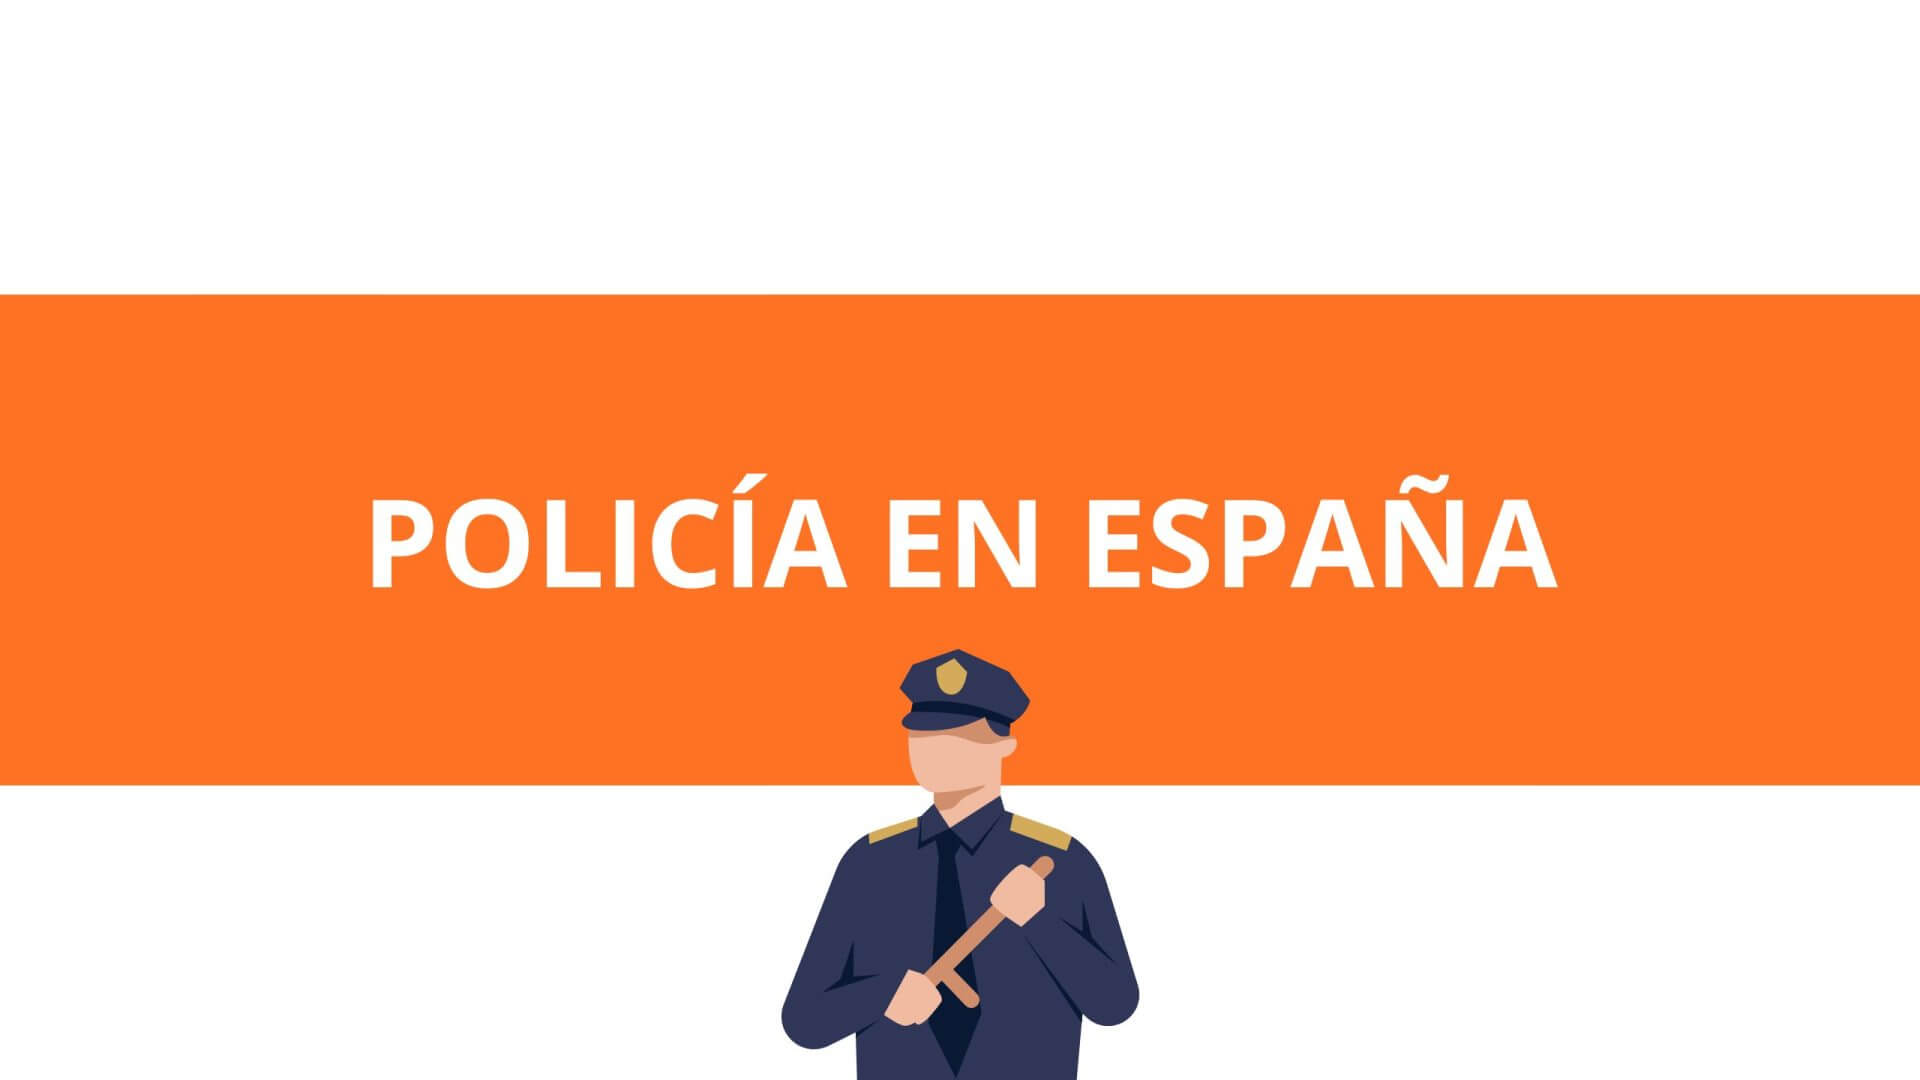 Instituto Hispánico de Murcia - De geschiedenis van de politie in Spanje